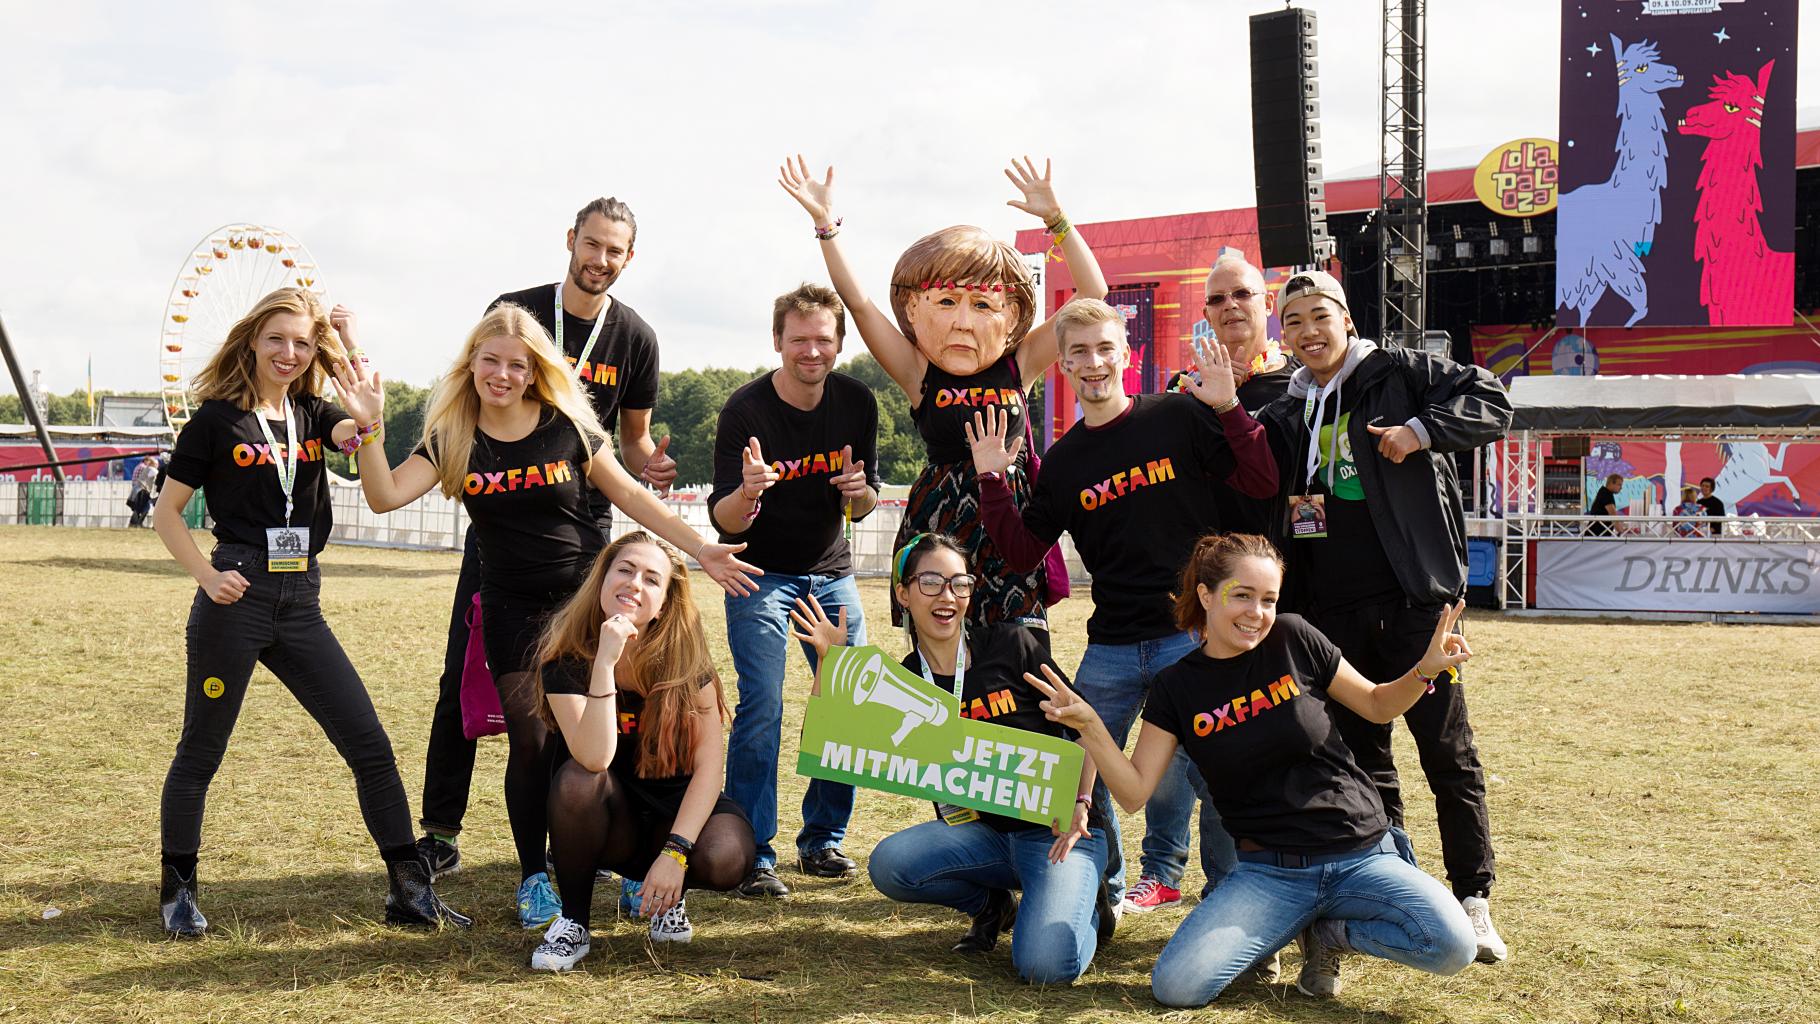 Das Team von Oxfam on tour auf dem Lollapalooza-Festival